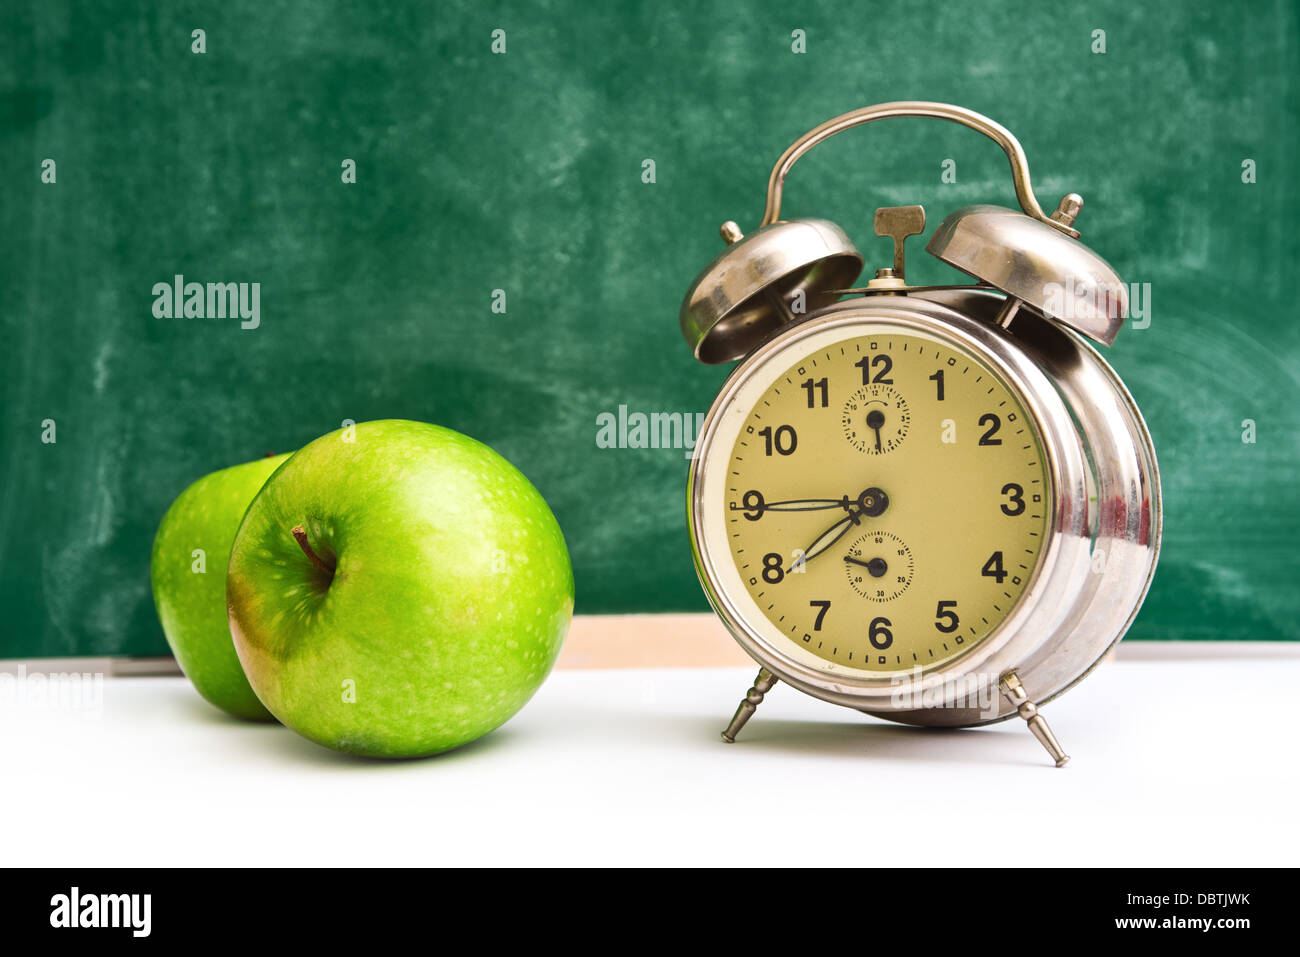 Schule mal wieder. Uhr und Äpfel an Lehrer Tabelle, grüne Tafel im  Hintergrund. Zurück zur Schule Stockfotografie - Alamy